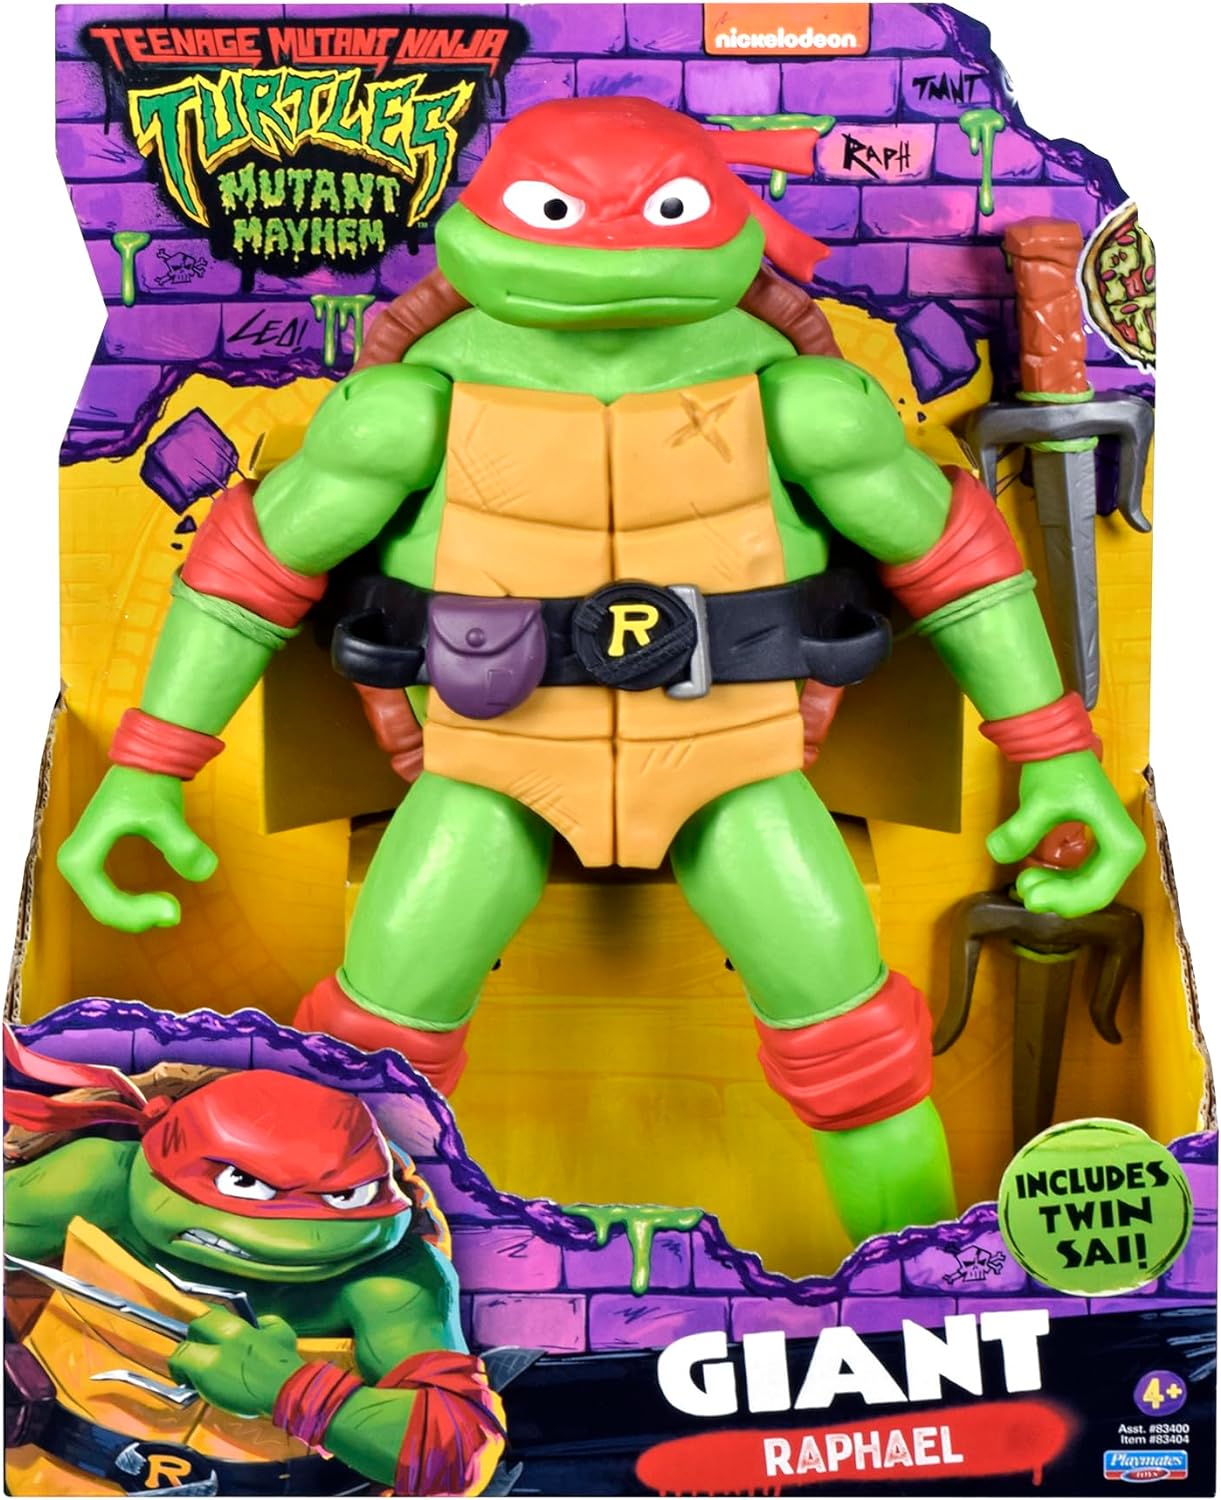 Teenage Mutant Ninja Turtles Mutant Mayhem Giant Raphael 12-Inch Action Figure